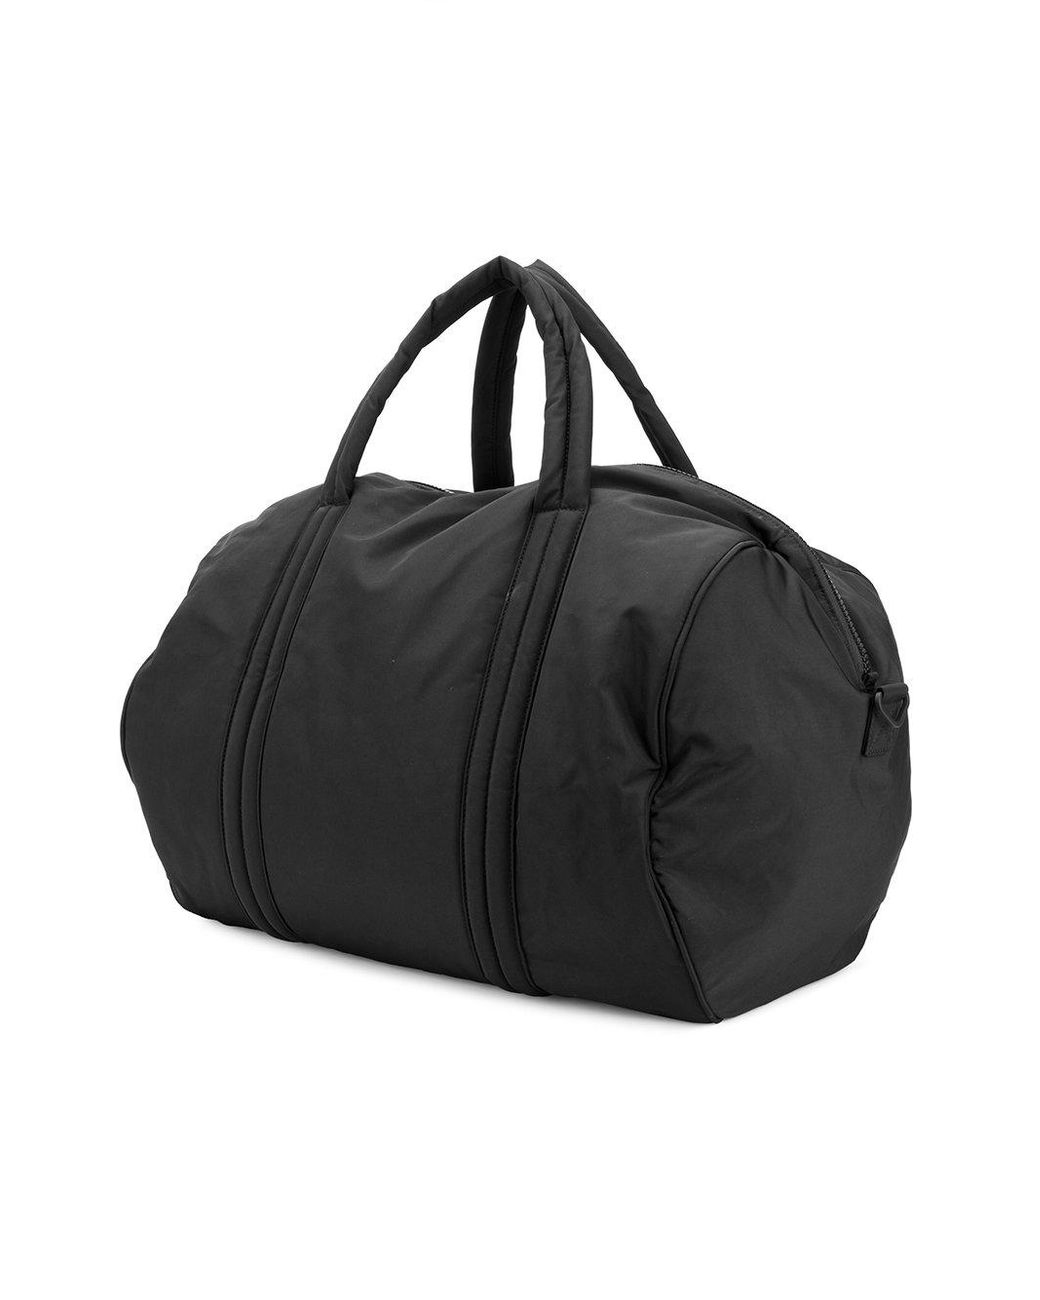 Yeezy Season 6 Gym Bag in Black | Lyst Canada